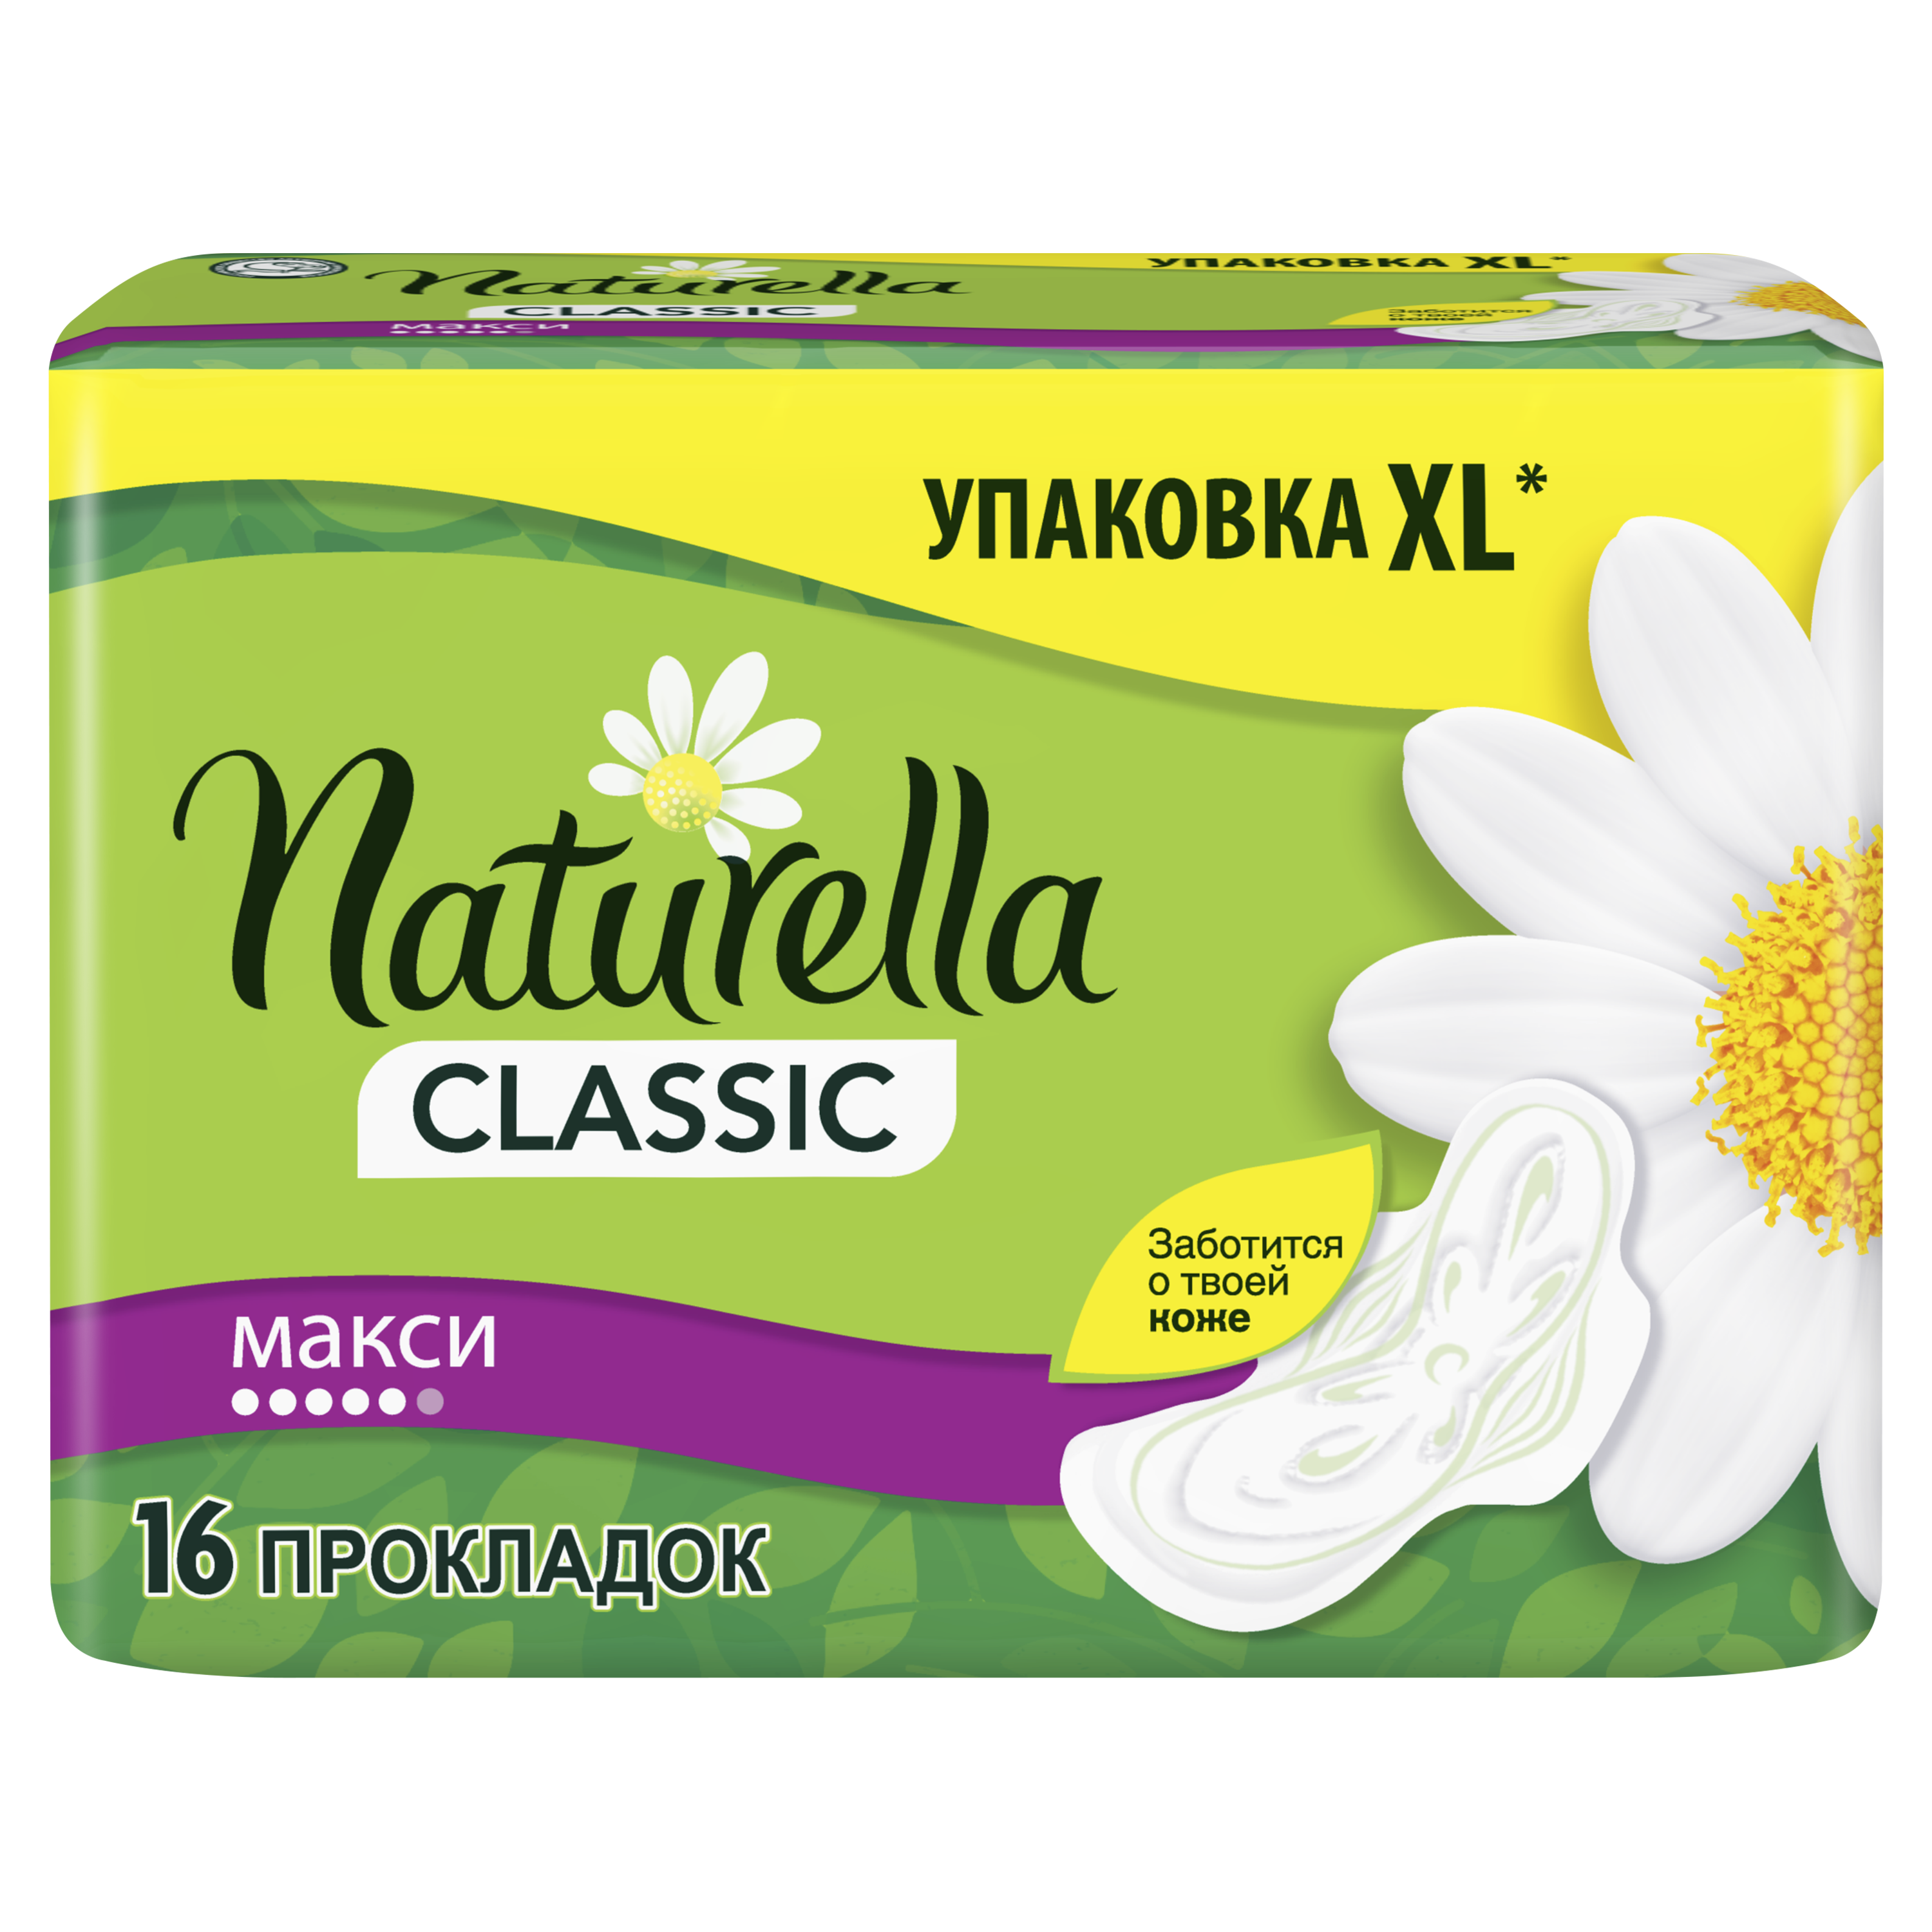 Гігієнічні прокладки Naturella Classic Maxi, 16 шт. - фото 3